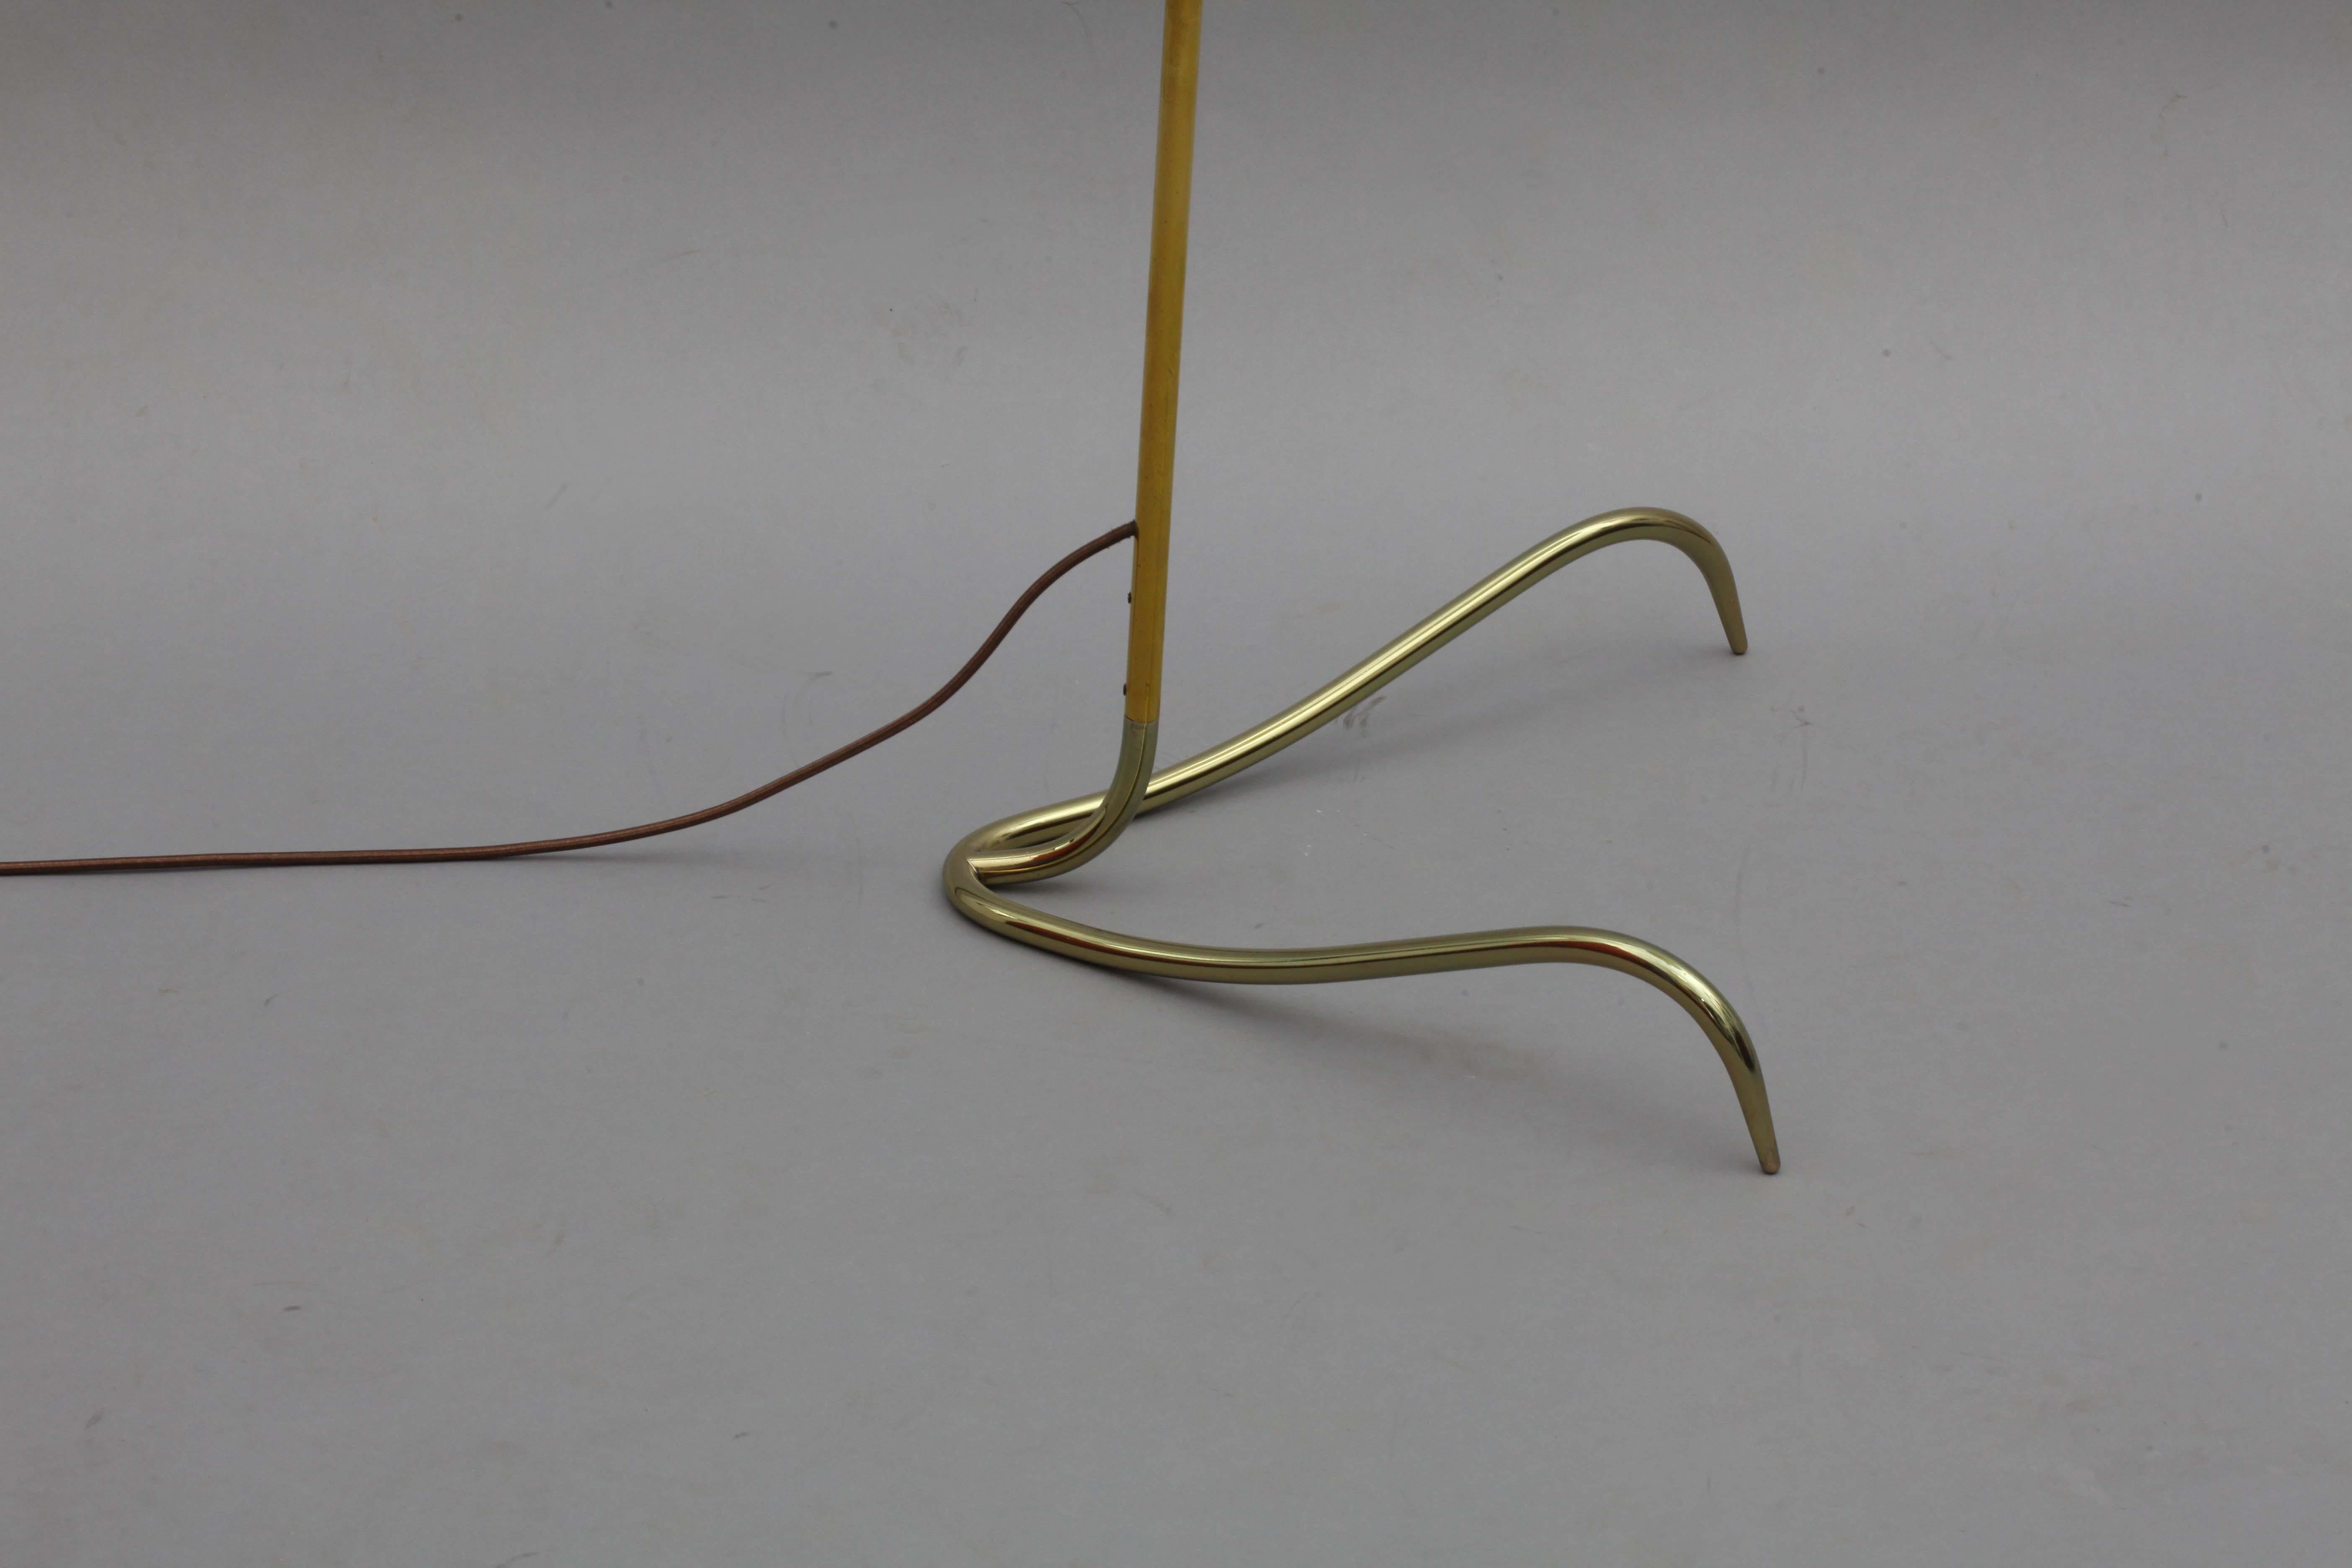 Floor lamp,
designed Rupert Nikoll
Vienna, 1950.
Brass base, brass stam, new fabric shade, wooden handle grip.